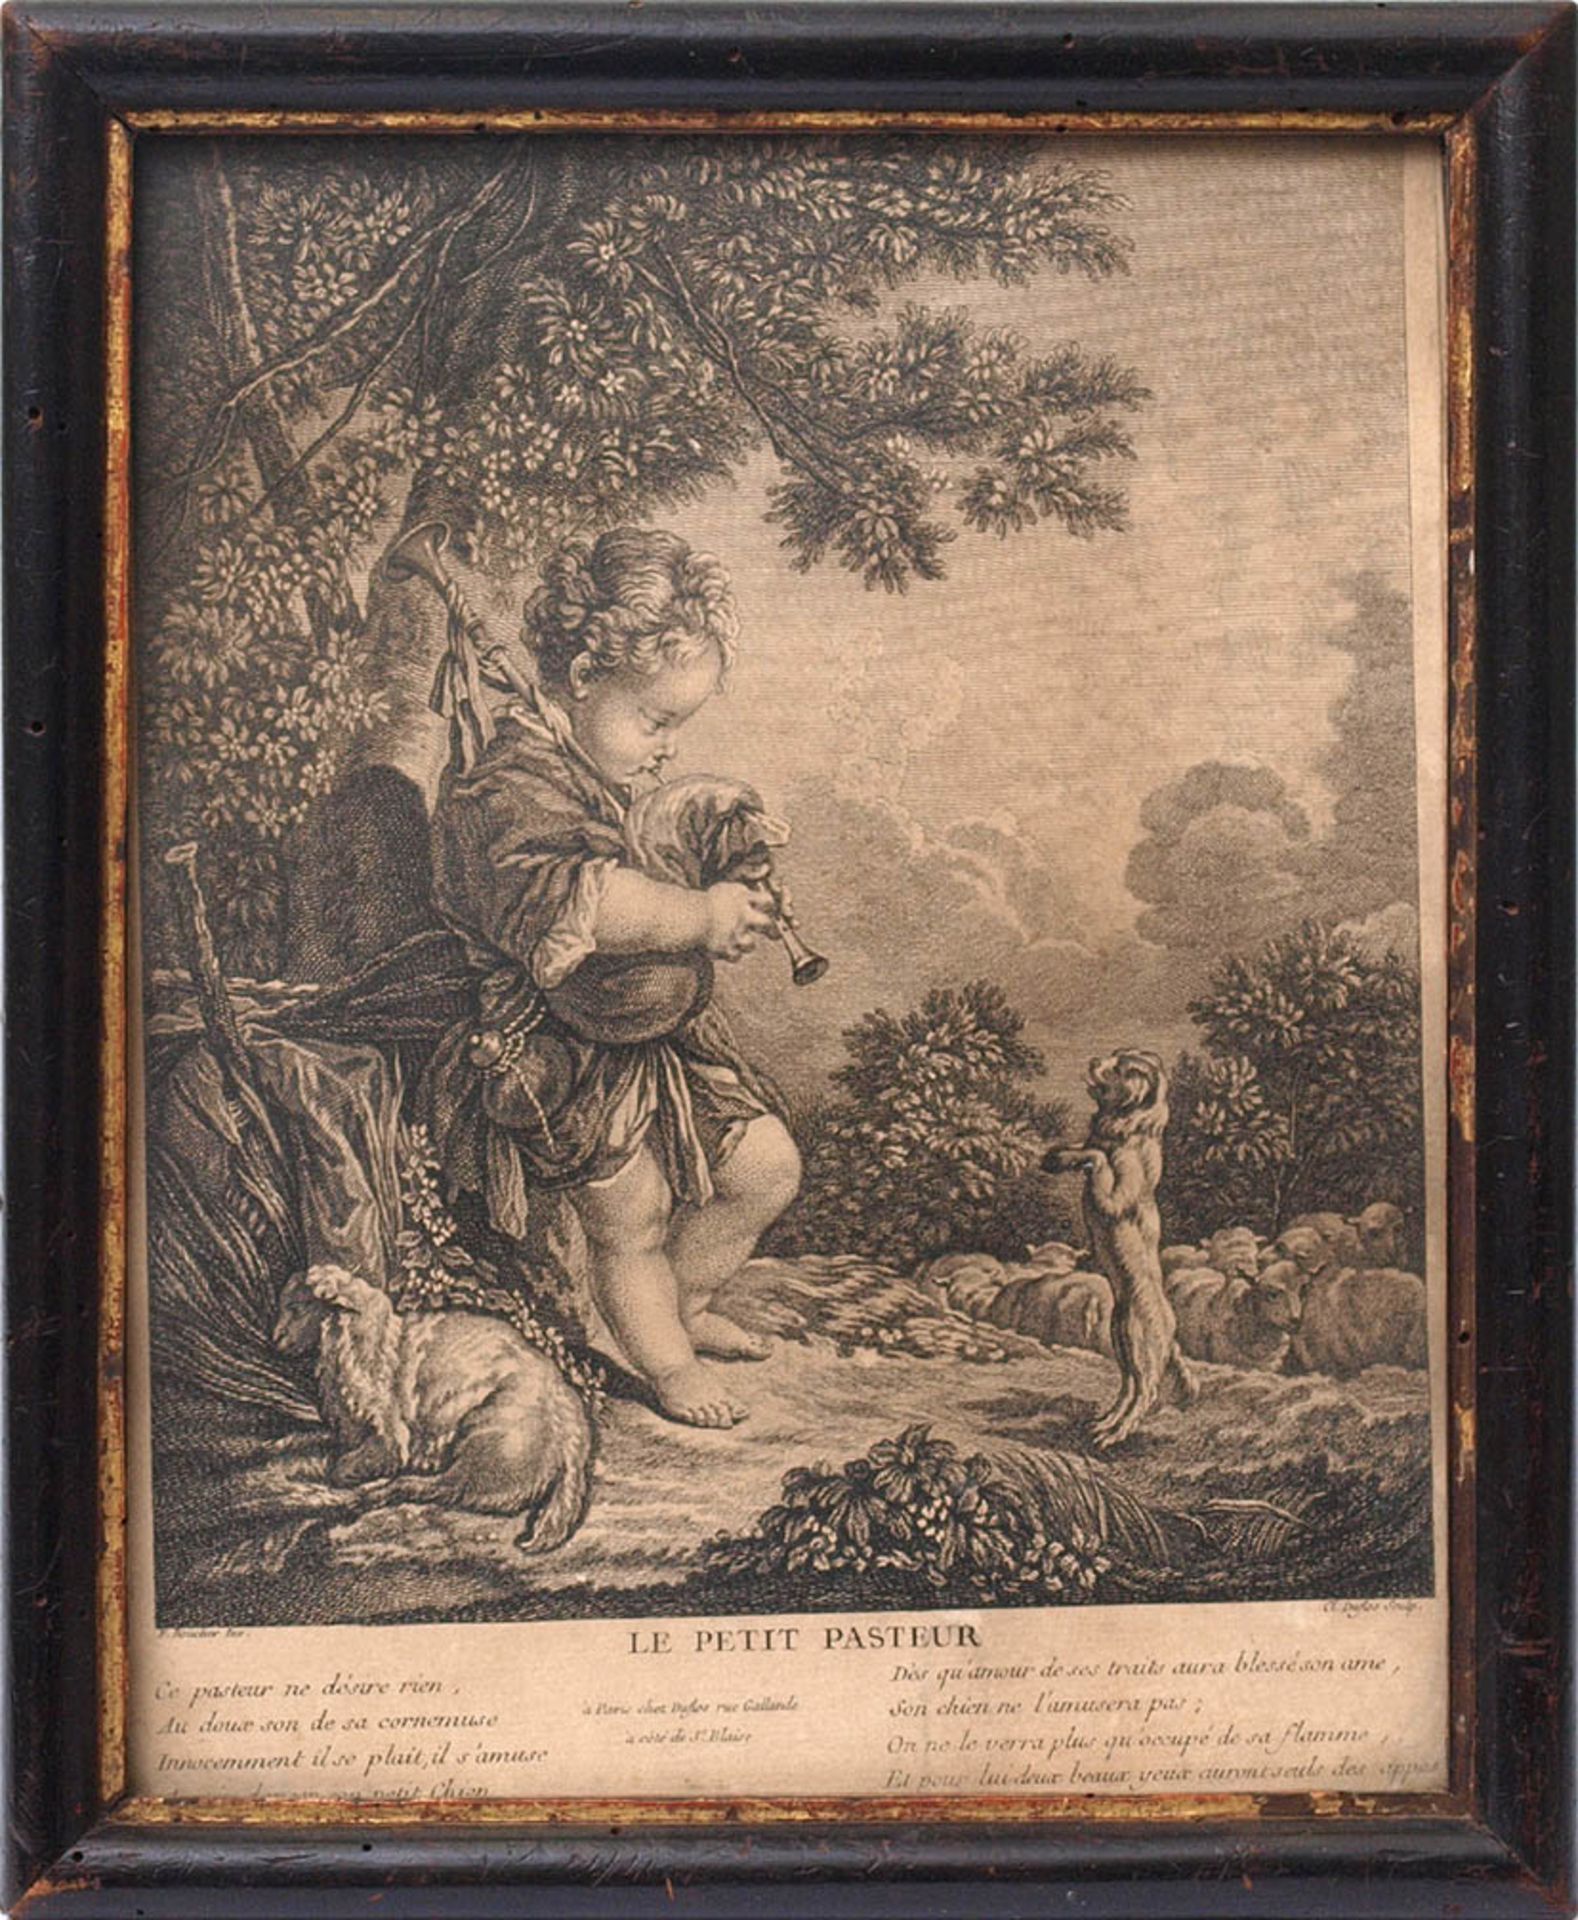 Duflos, C.L., 1700 - 1786 Radierung nach Boucher, bez. "Le petite Pasteur", rechts unten sign., ger.